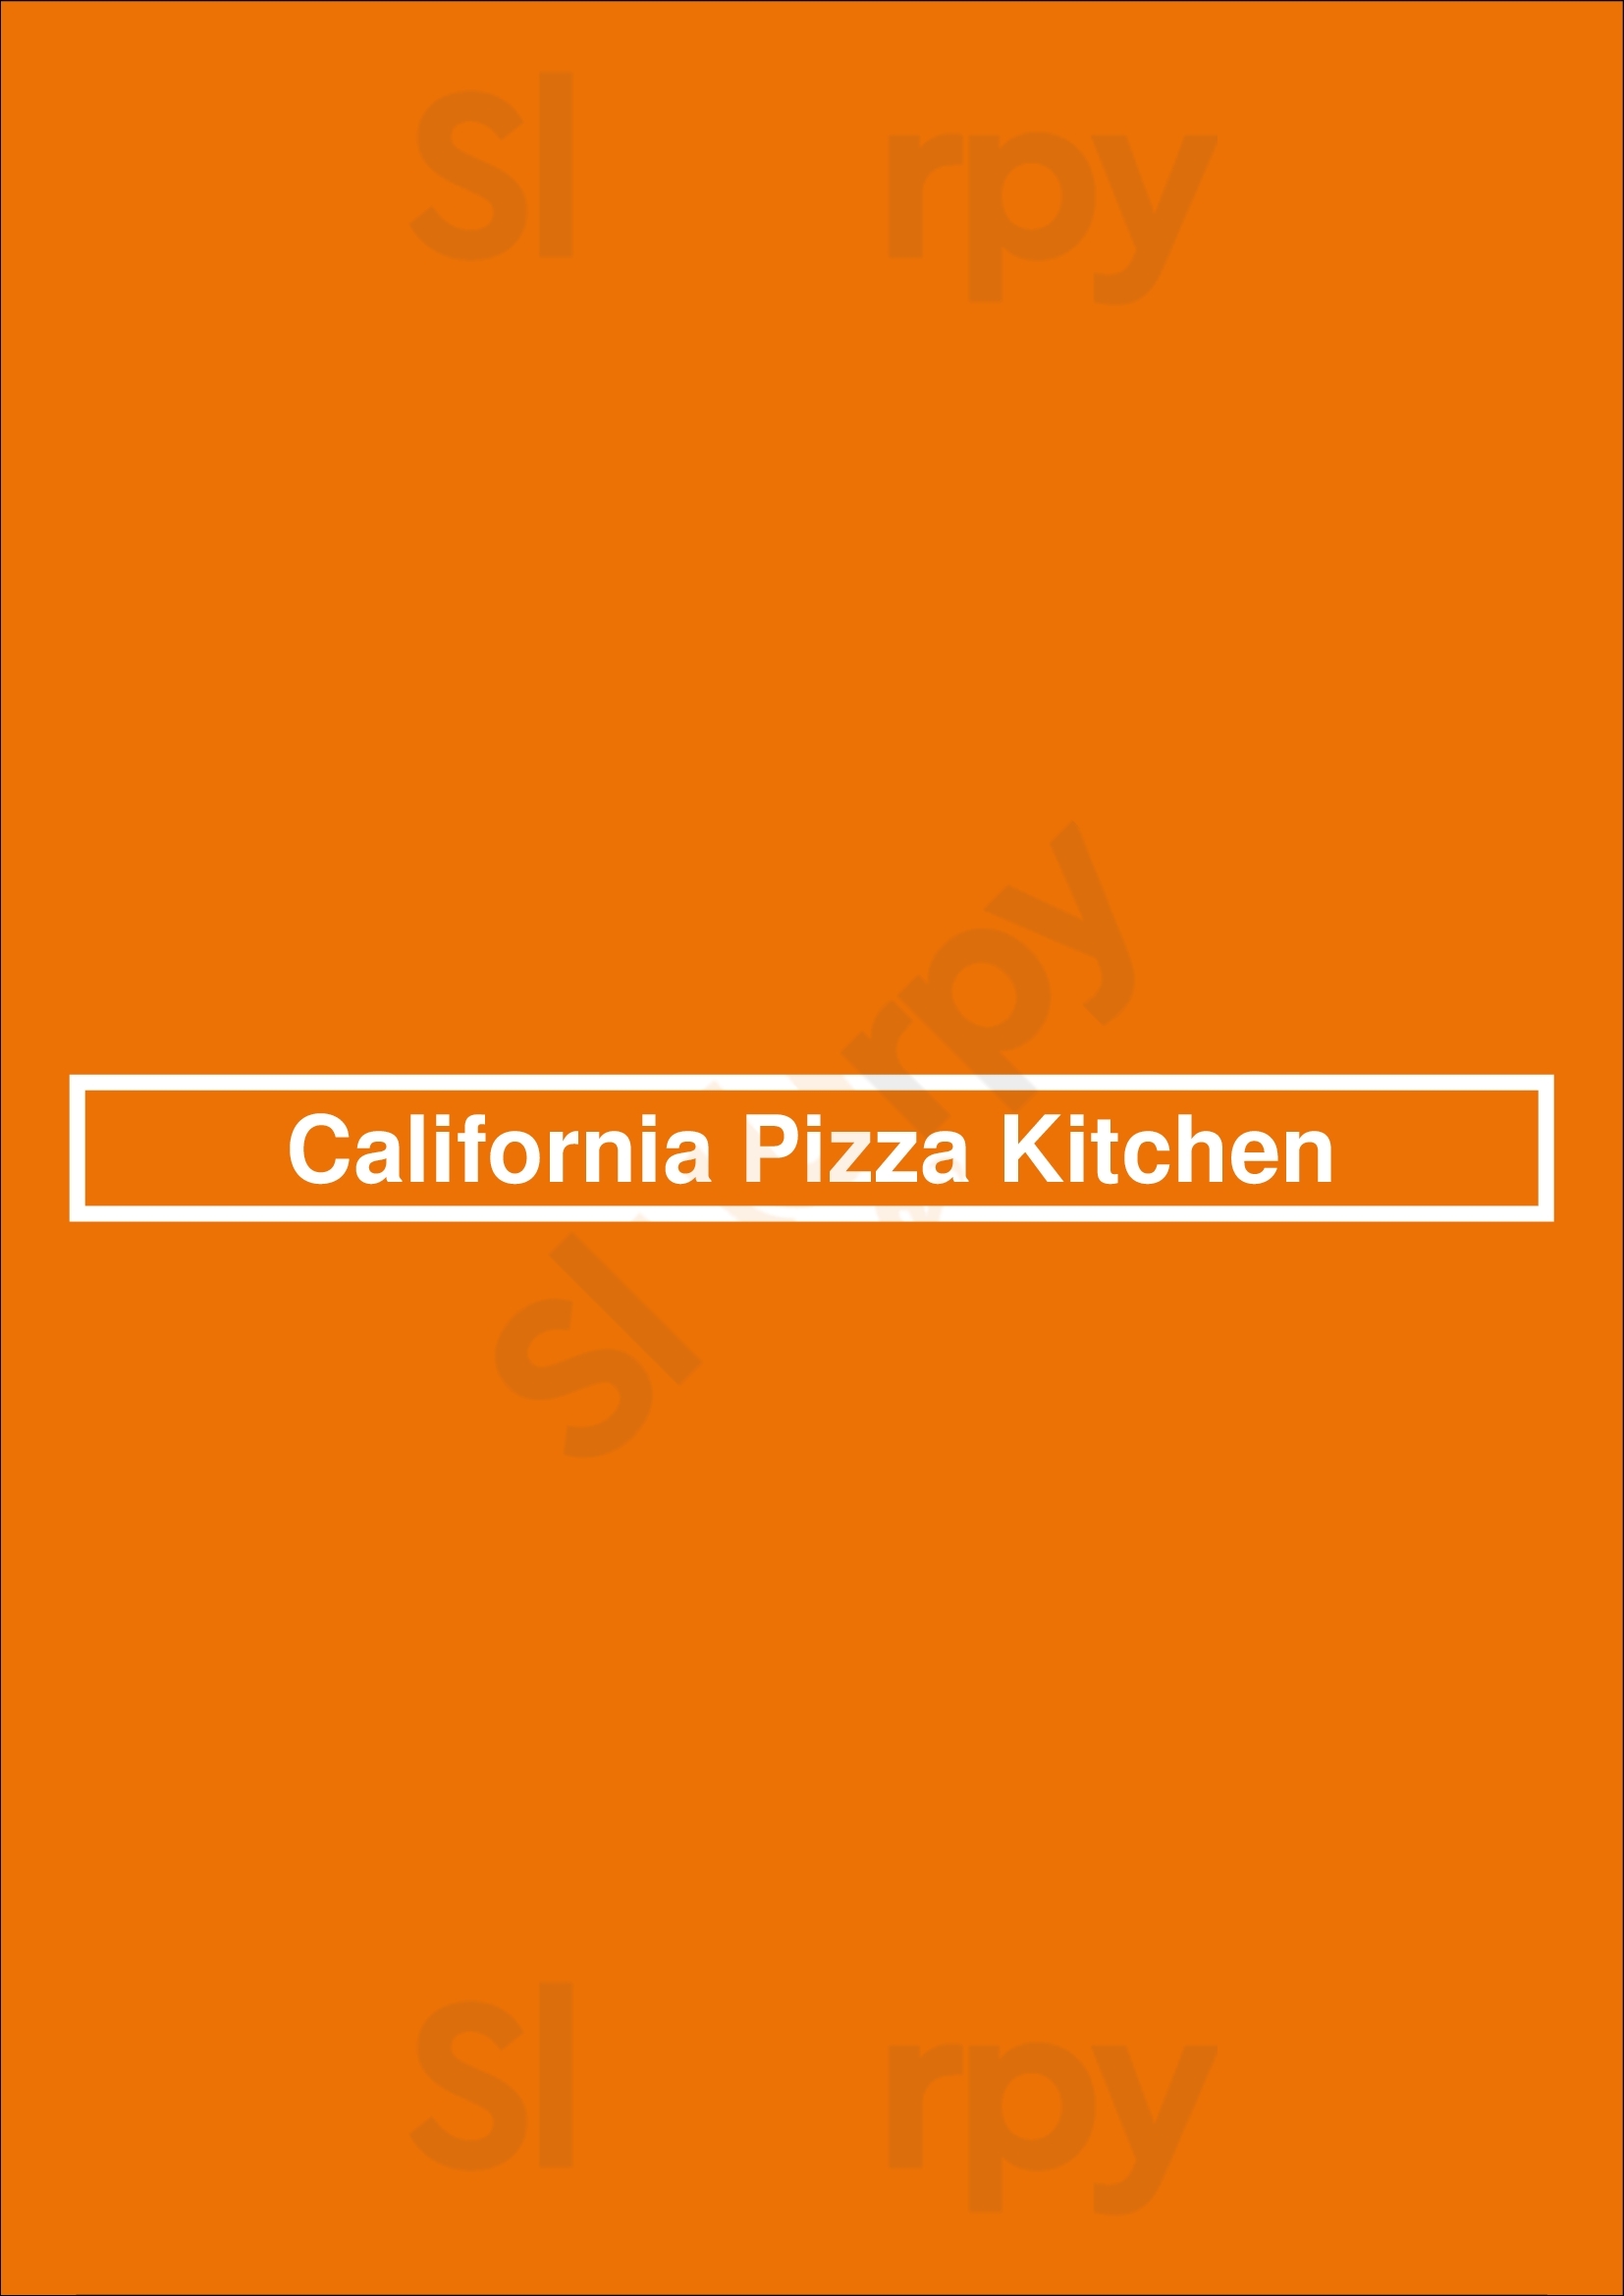 California Pizza Kitchen Encino Los Angeles Menu - 1